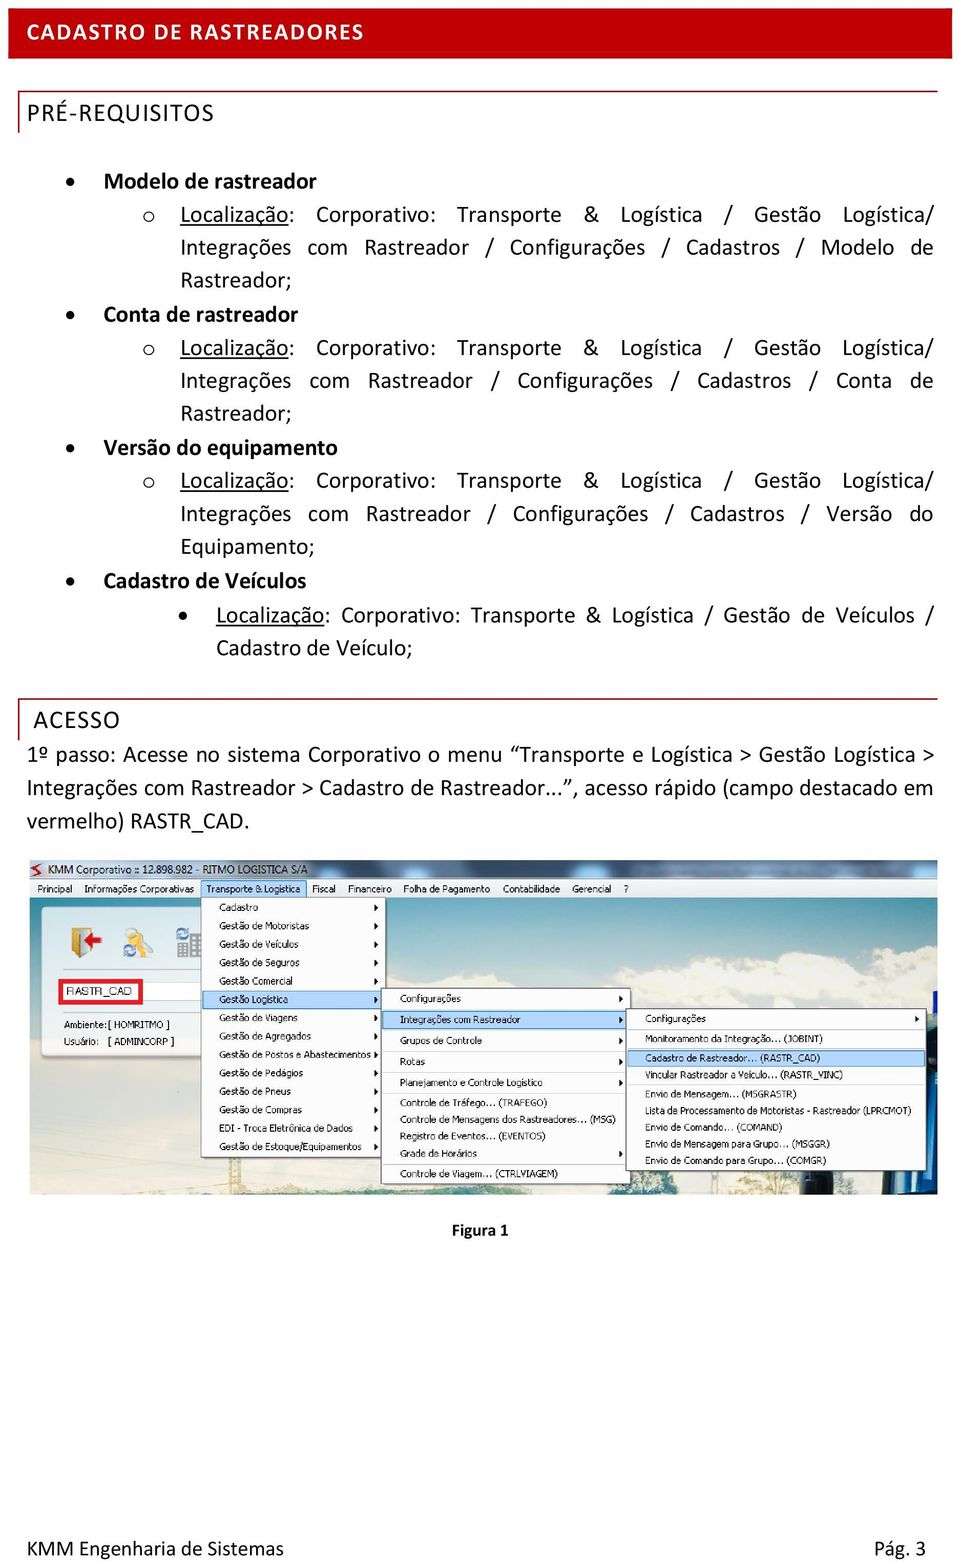 equipamento o Localização: Corporativo: Transporte & Logística / Gestão Logística/ Integrações com Rastreador / Configurações / Cadastros / Versão do Equipamento; Cadastro de Veículos Localização: